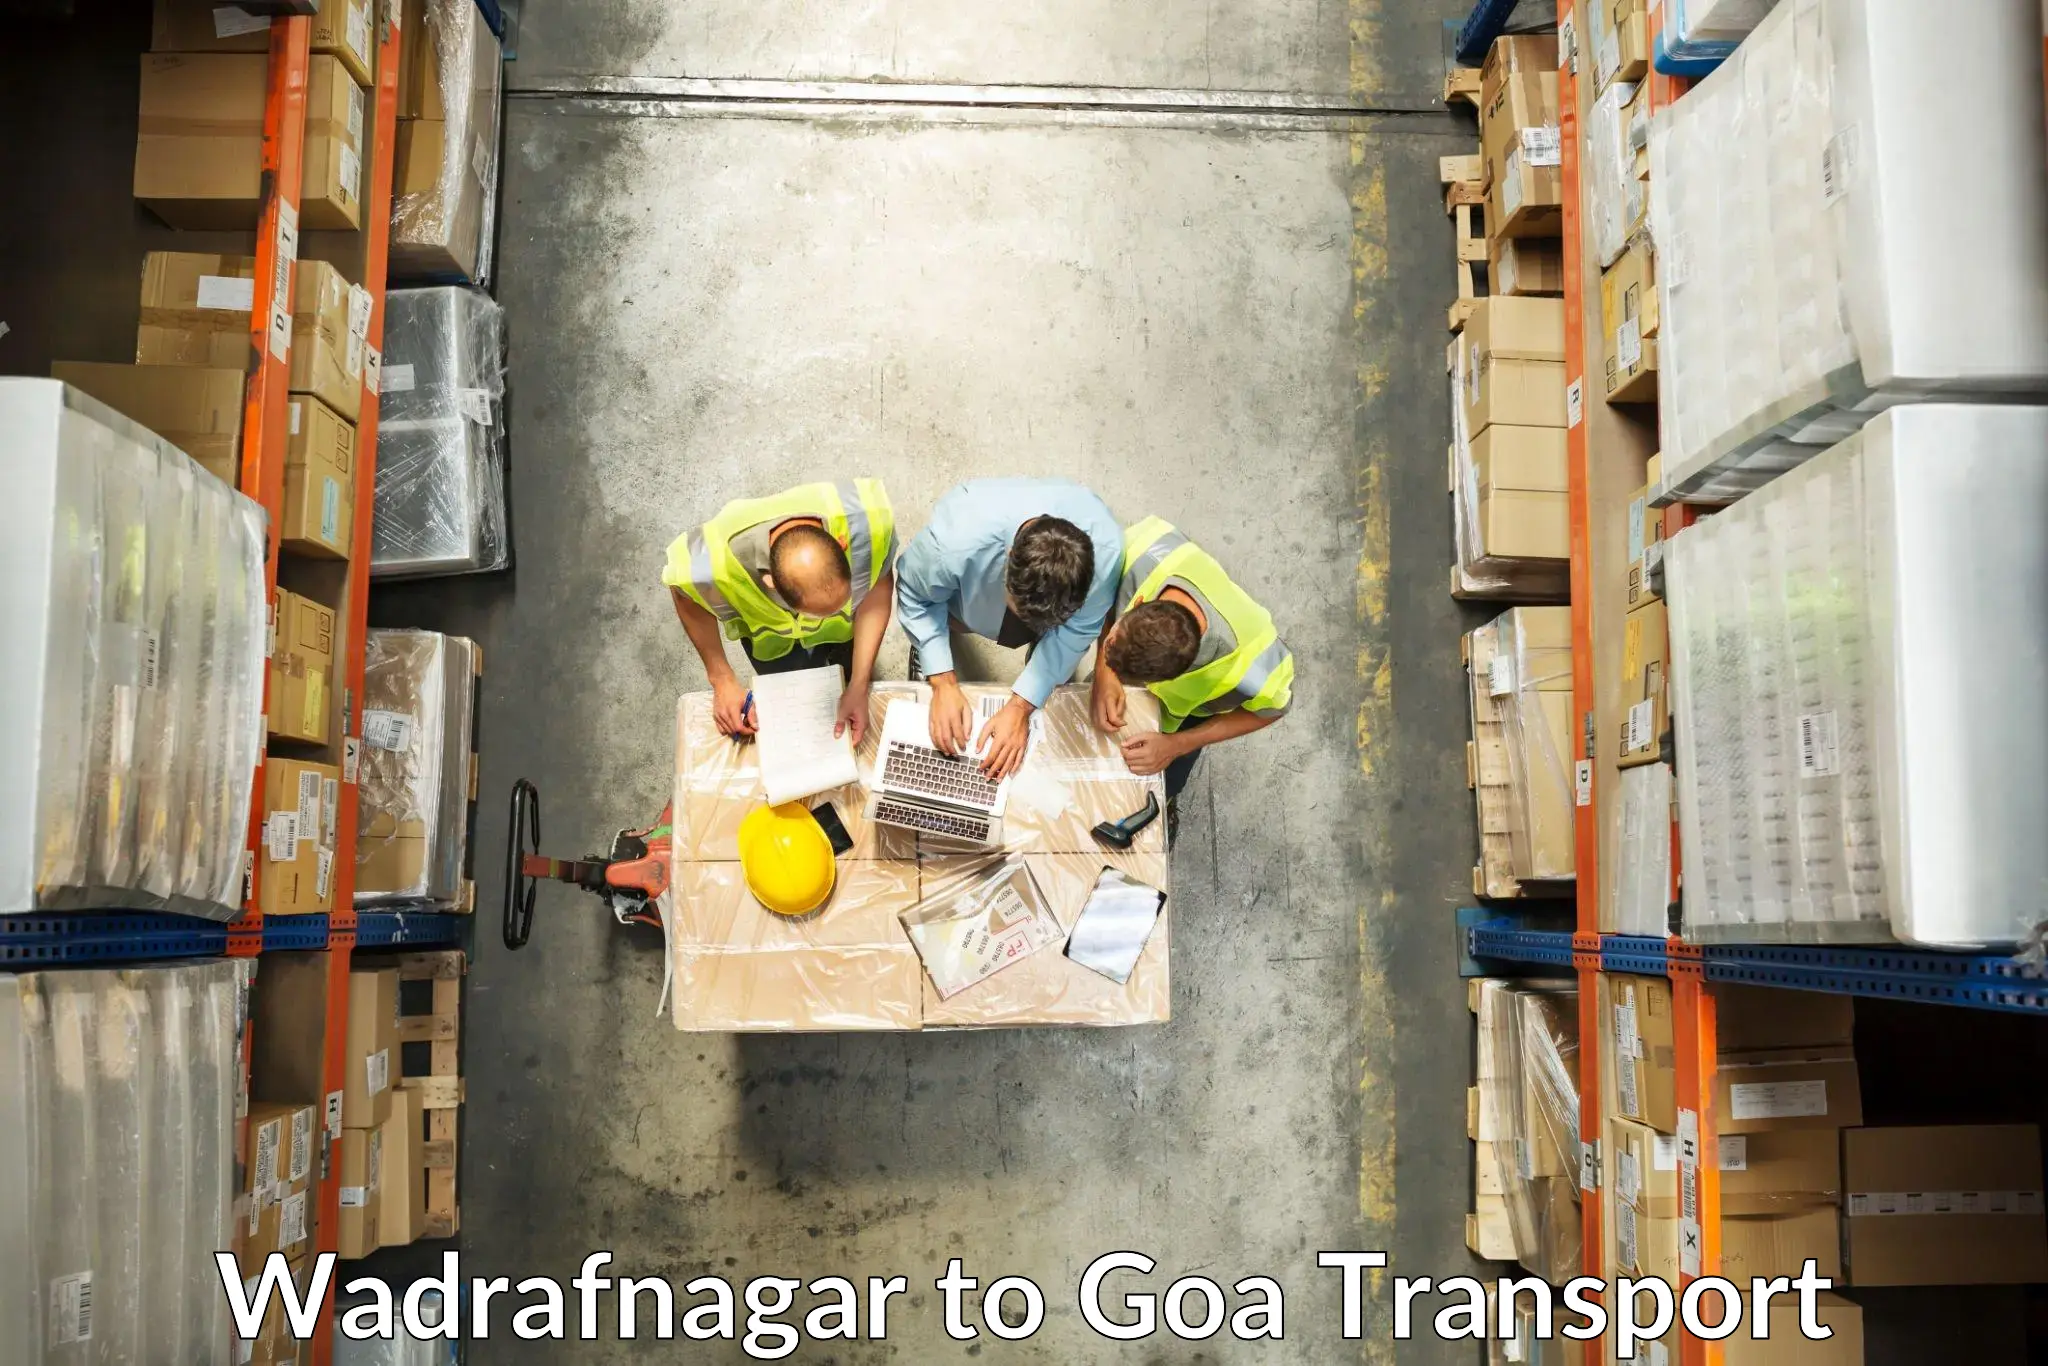 Delivery service Wadrafnagar to NIT Goa